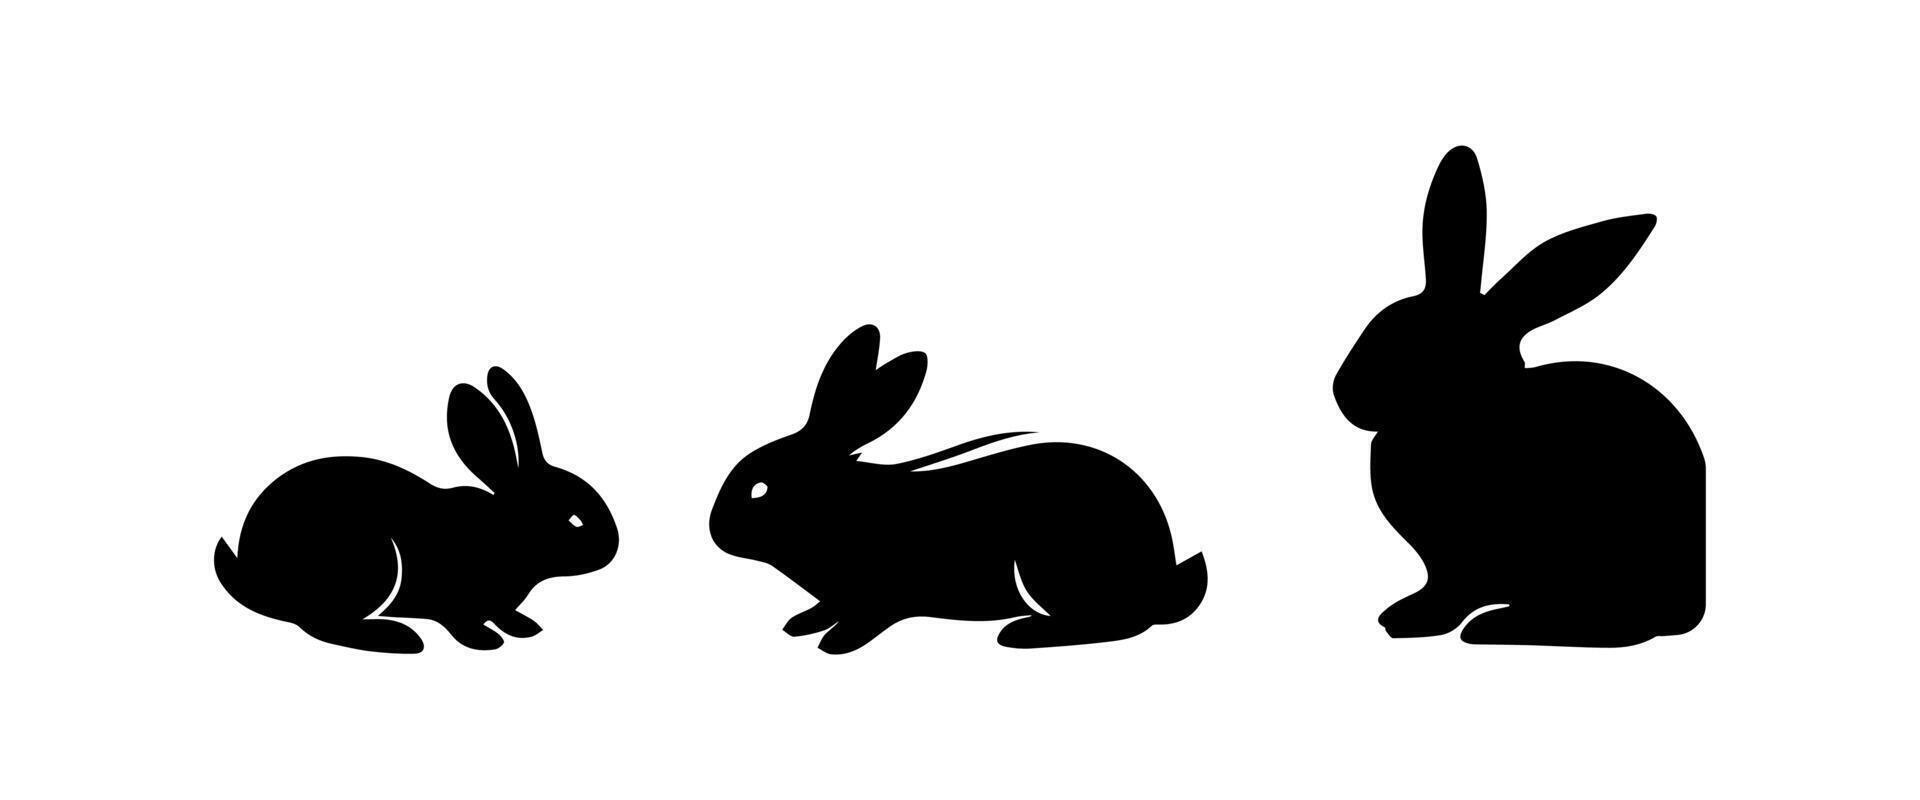 silhouetten van Pasen konijntjes geïsoleerd Aan een wit achtergrond. reeks van verschillend konijnen silhouetten vector